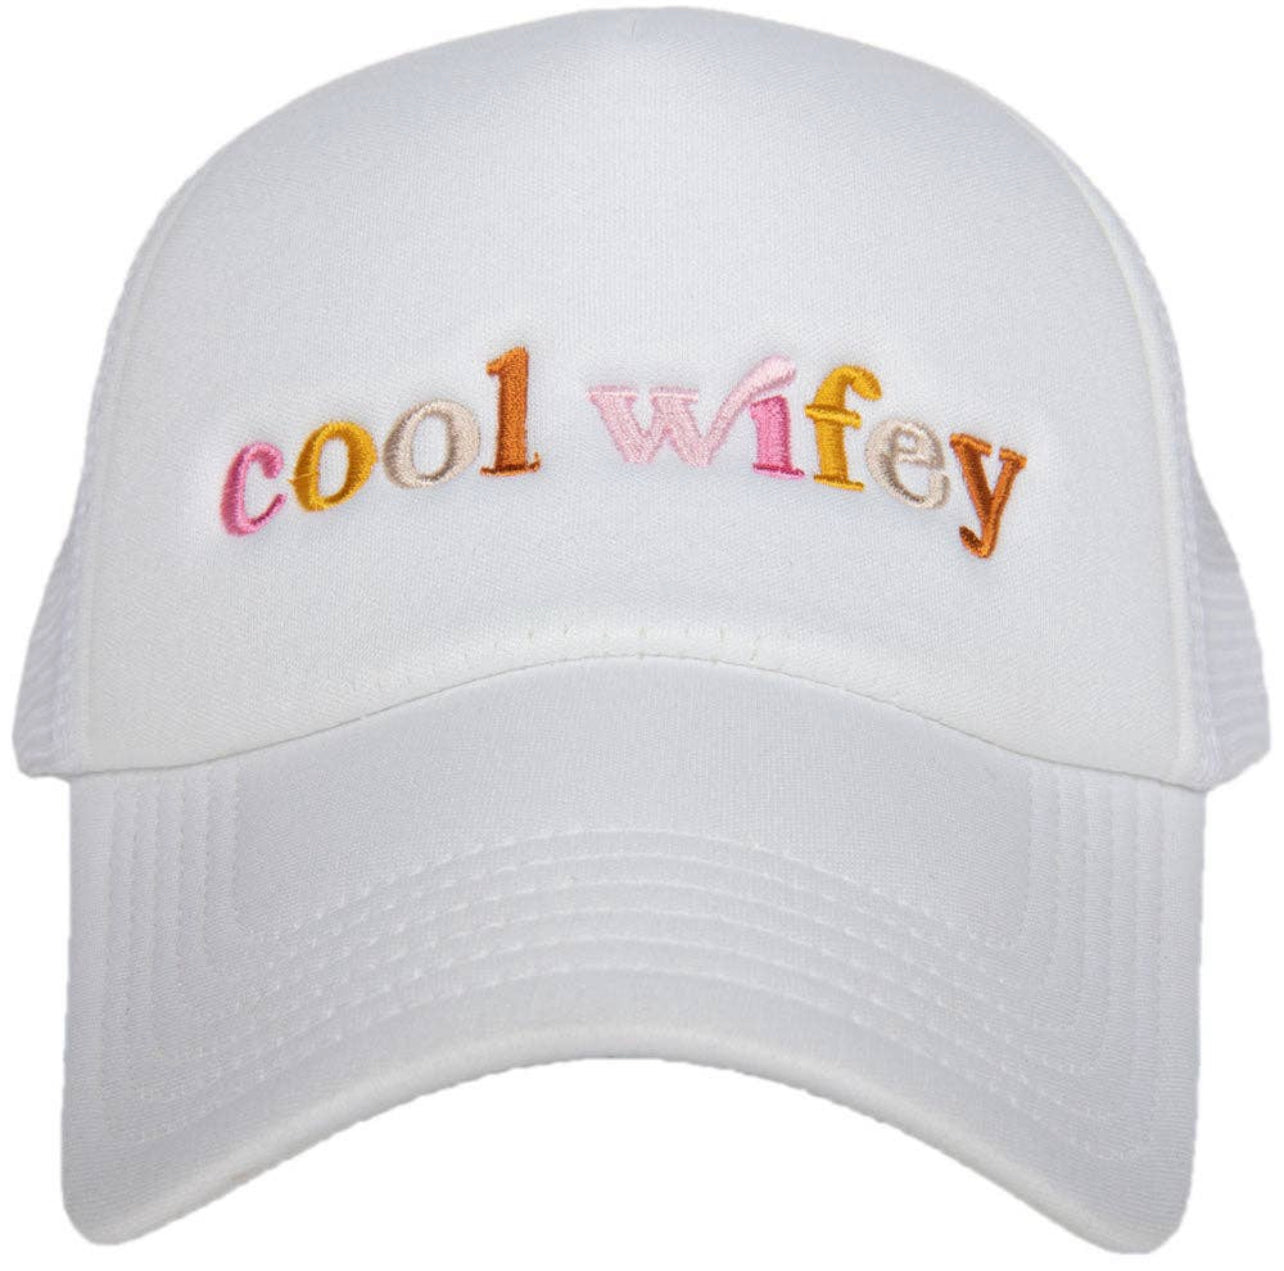 Cool Wifey Trucker Hat